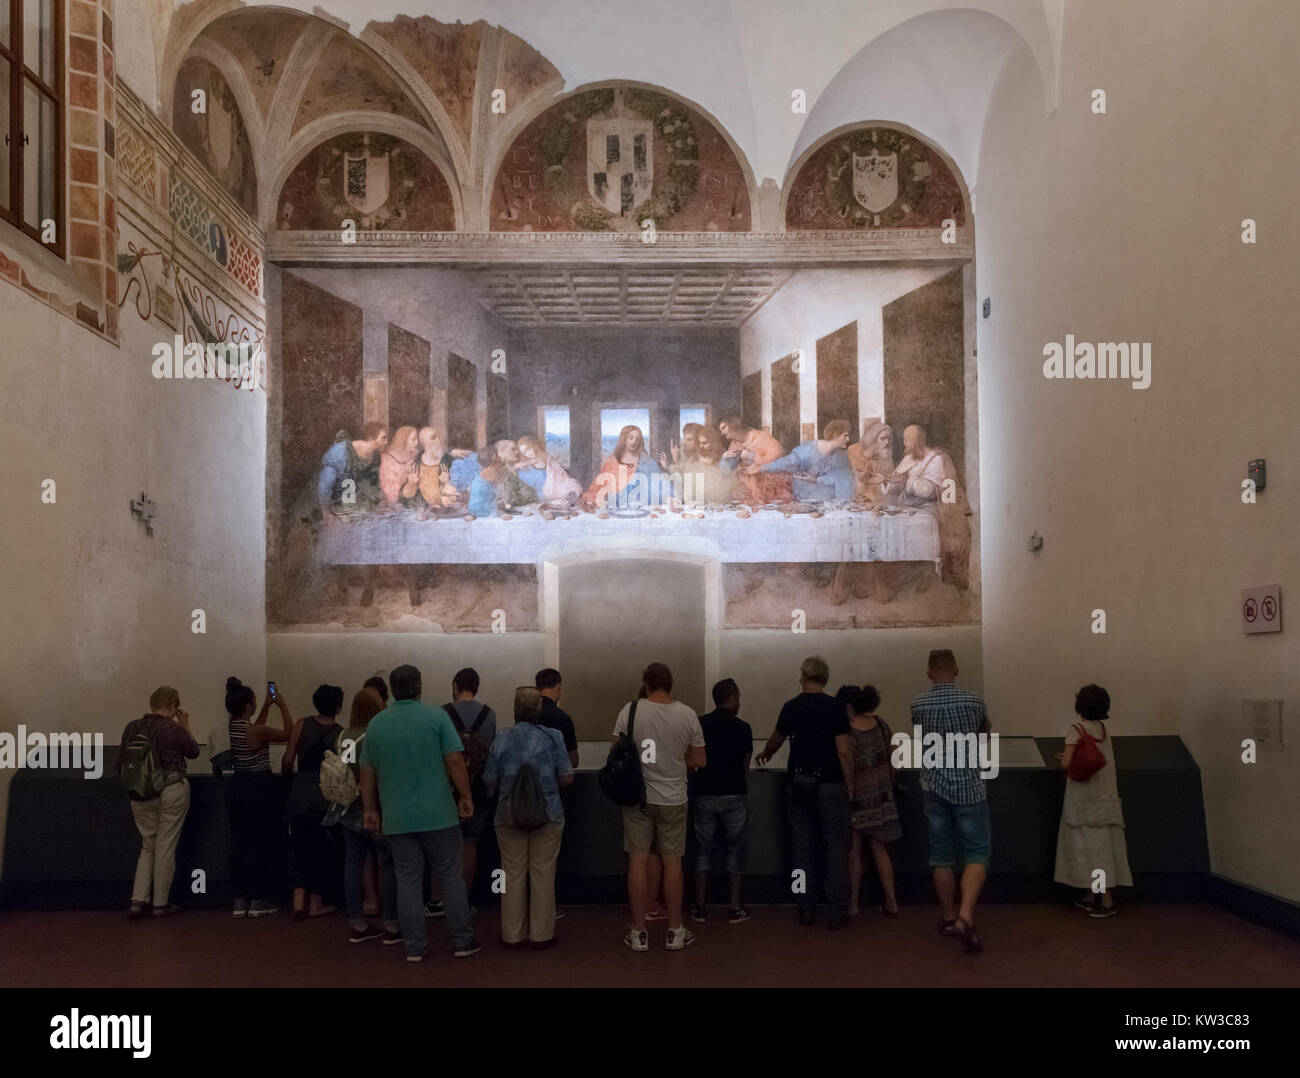 Visitors in front of The Last Supper (Cenacolo Vinciano) by Leonardo da Vinci (1452-1519) c.1494-98, a fresco in the refectory of the Monastery of Santa Maria delle Grazie, Milan, Italy Stock Photo